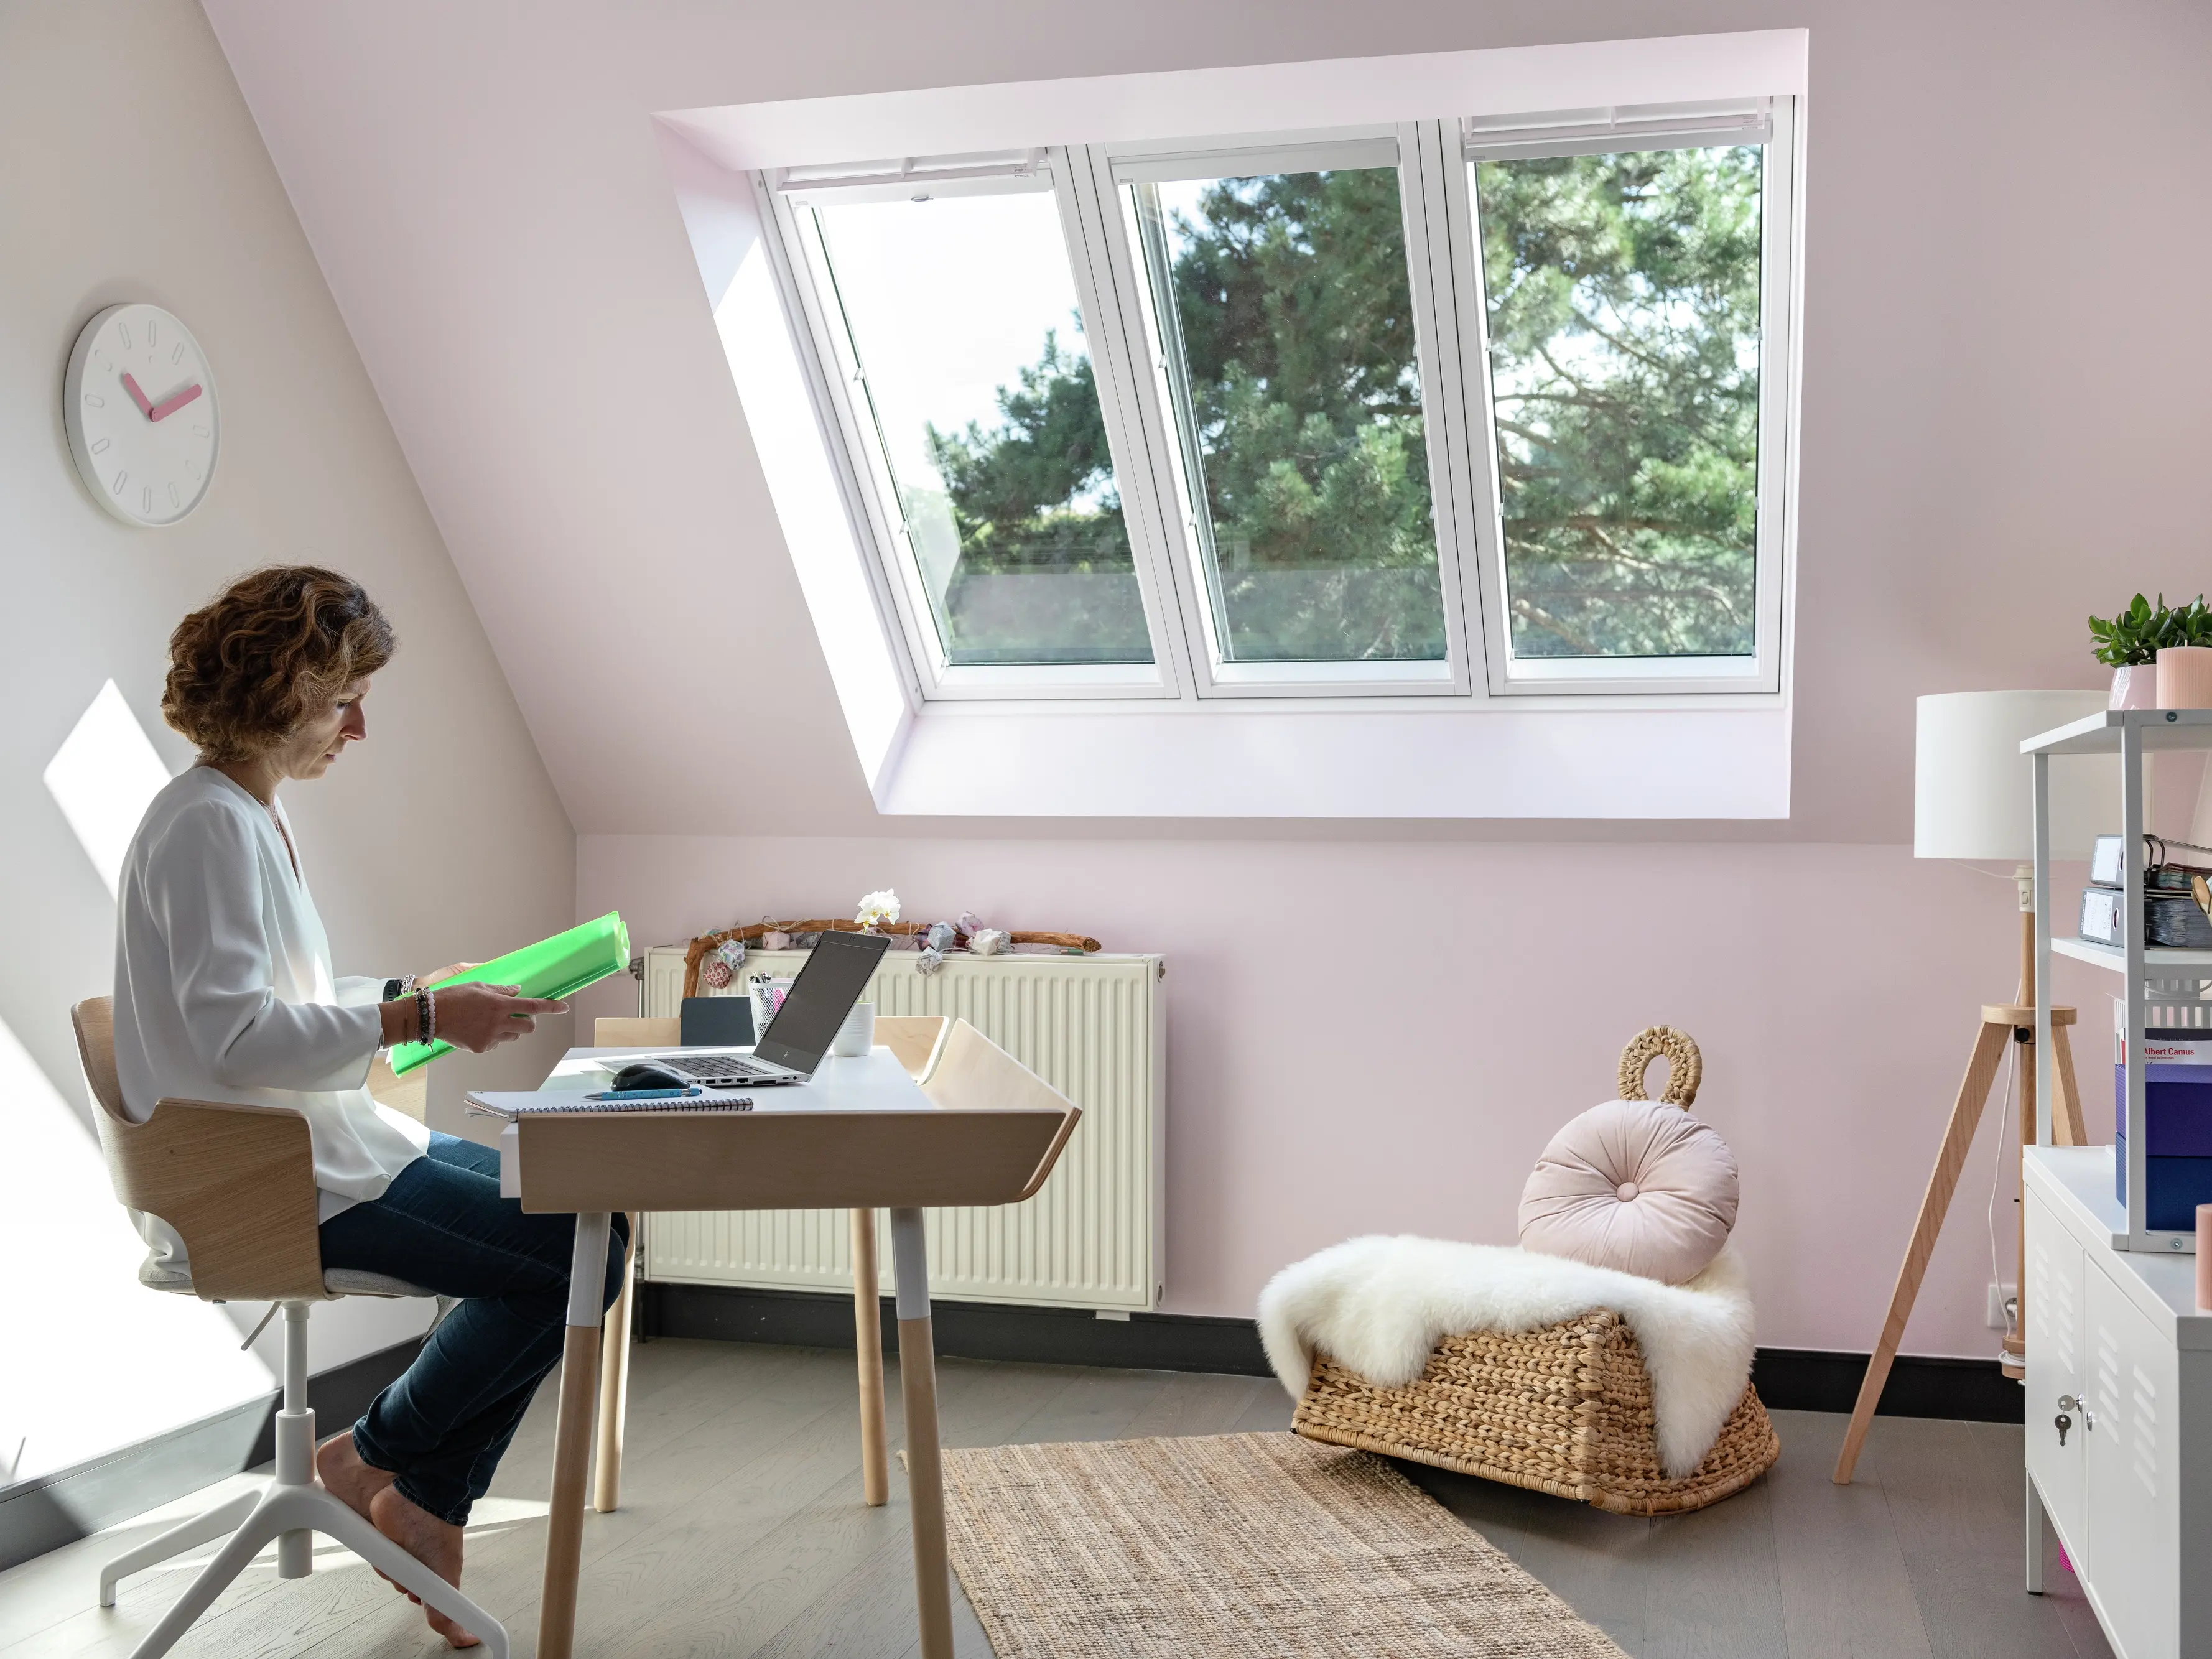 Bureau à domicile avec un bureau moderne, un ordinateur portable et une fenêtre de toit VELUX offrant une lumière naturelle.